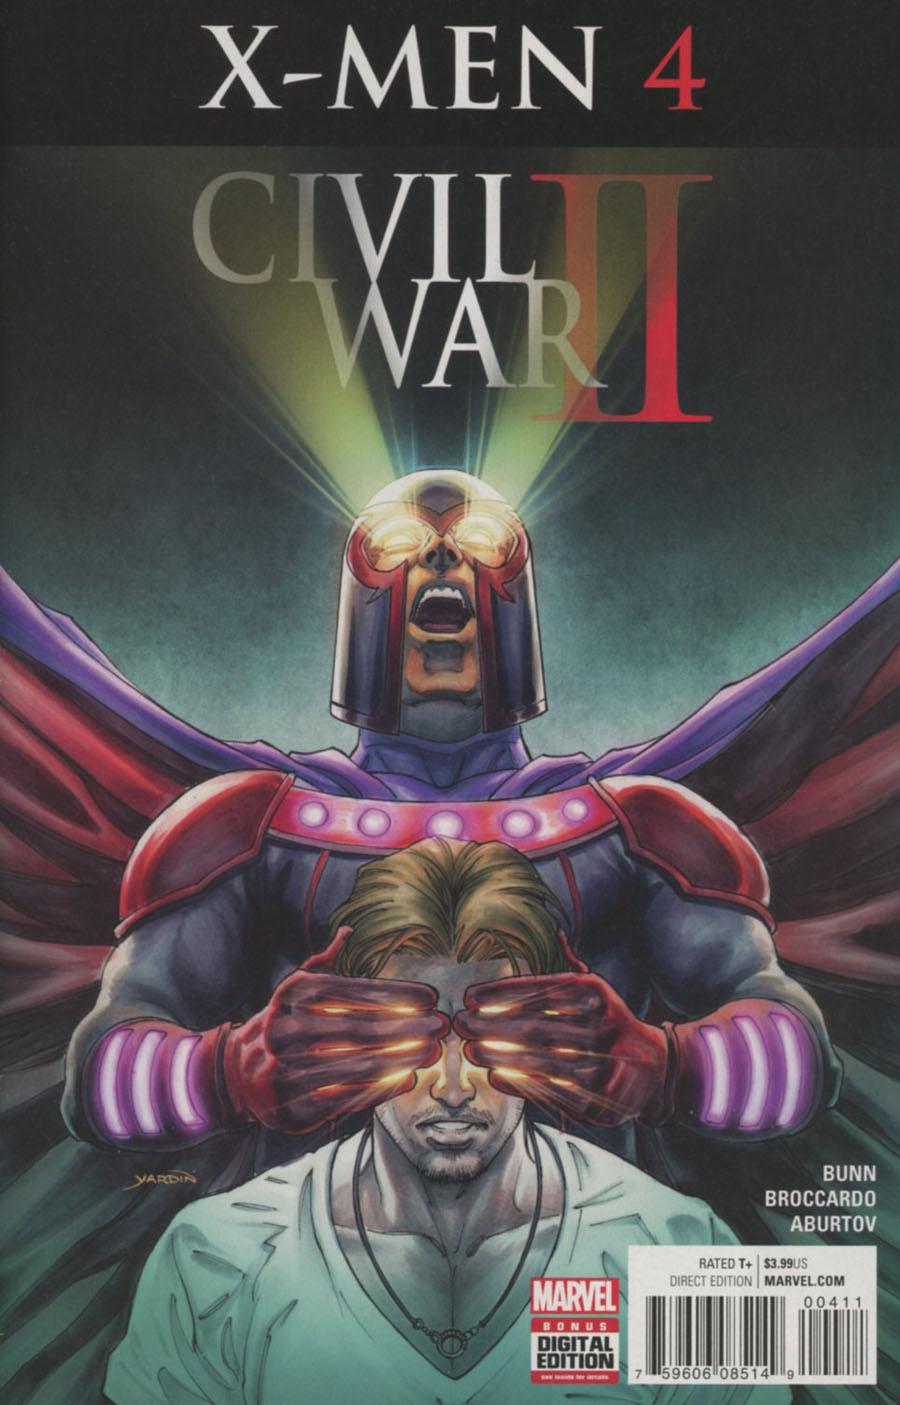 Civil War II X-Men Vol. 1 #4